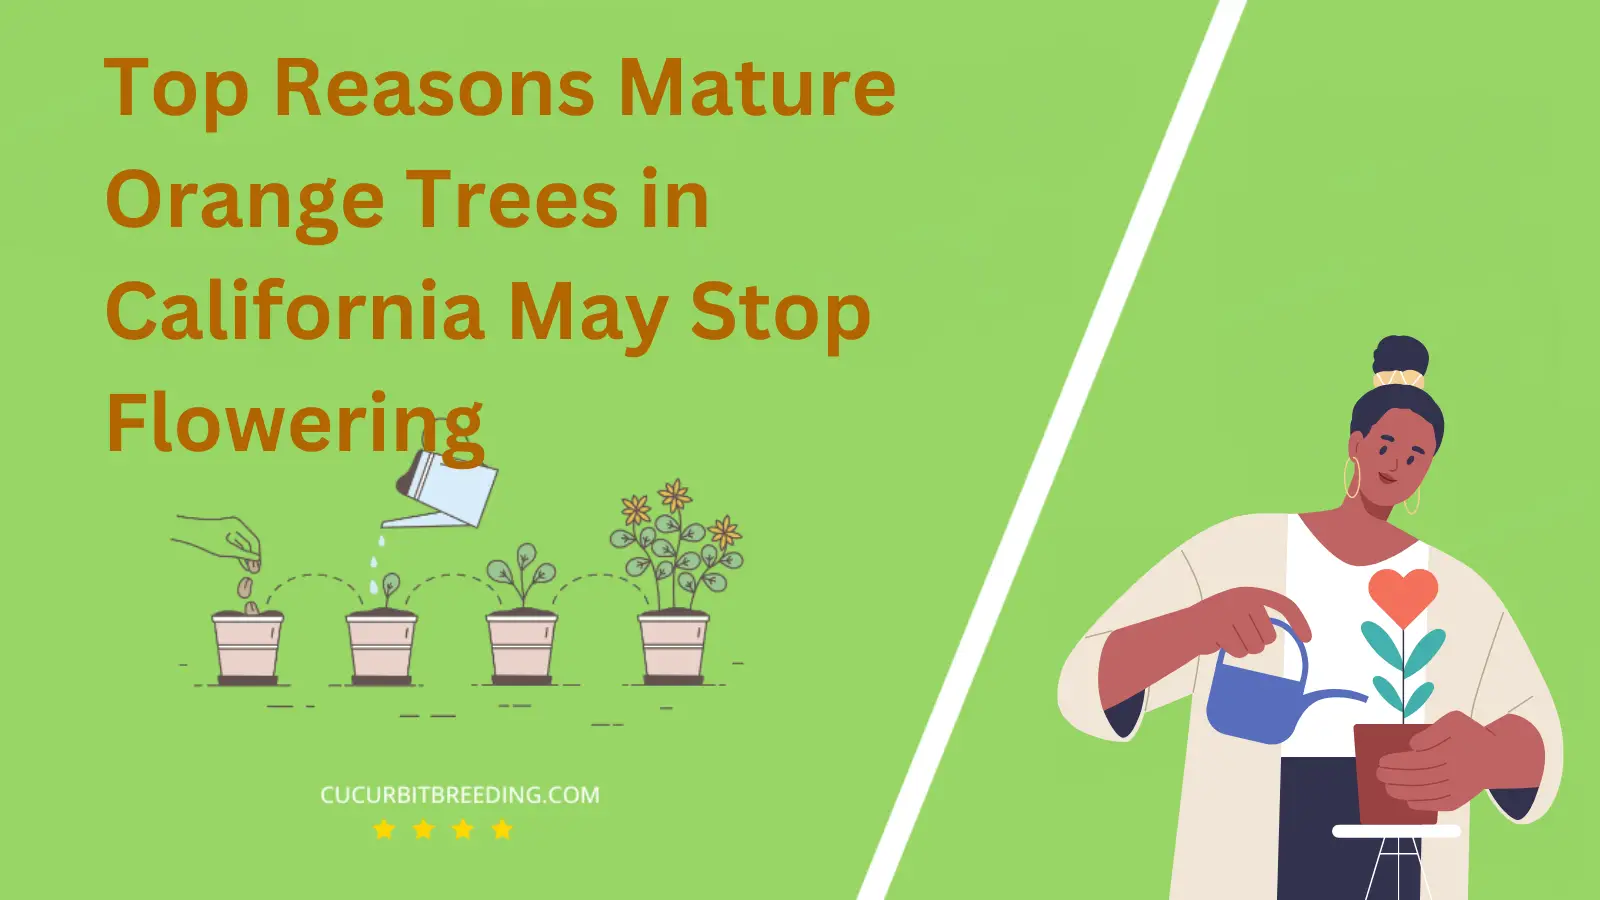 Top Reasons Mature Orange Trees in California May Stop Flowering